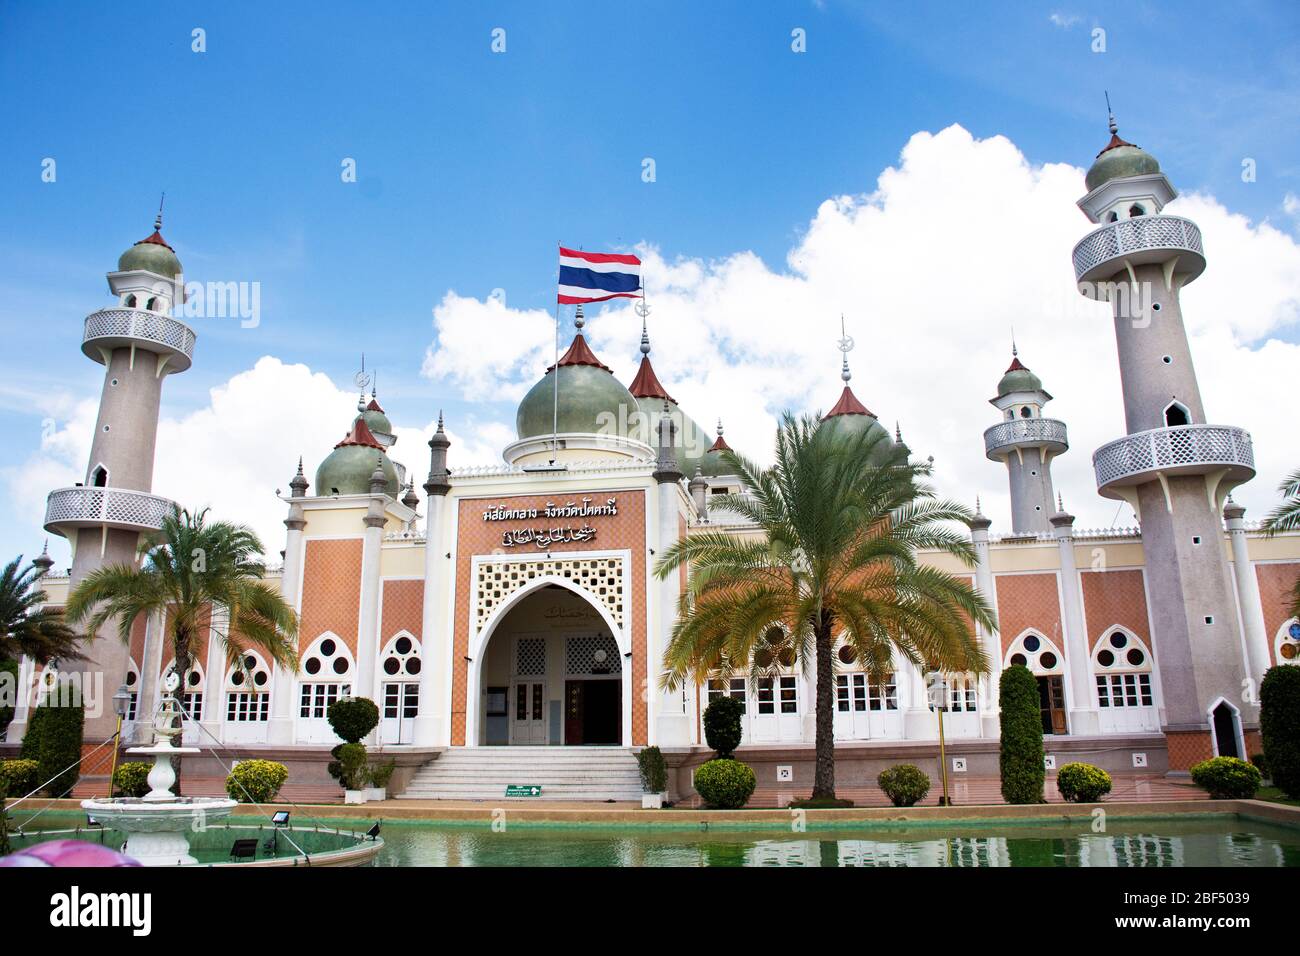 PATTANI, THAÏLANDE - 16 août : les thaïlandais et les voyageurs étrangers voyagent visiter et respecter la prière à la Mosquée centrale ou Masjid klang de Pattani au sou Banque D'Images